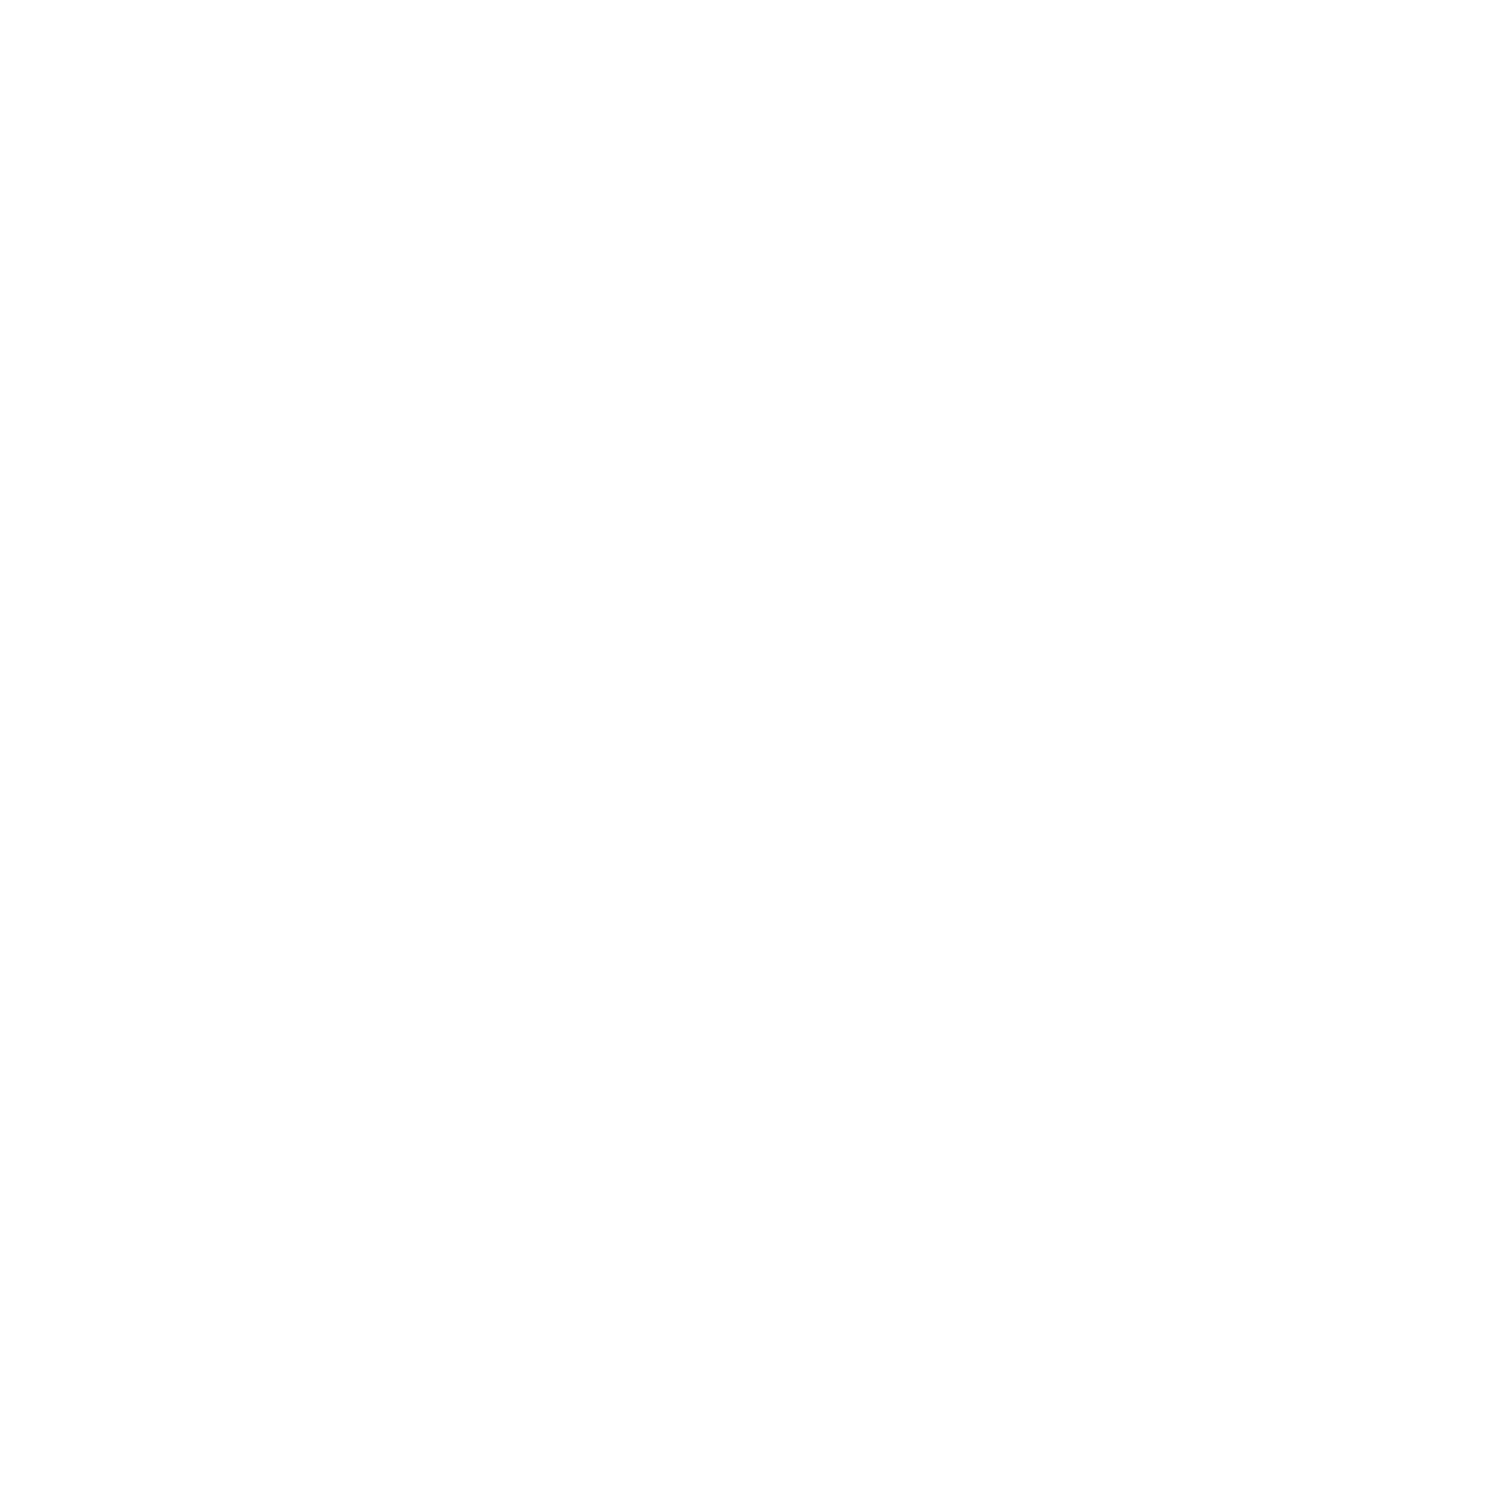 CineEnRuta.png